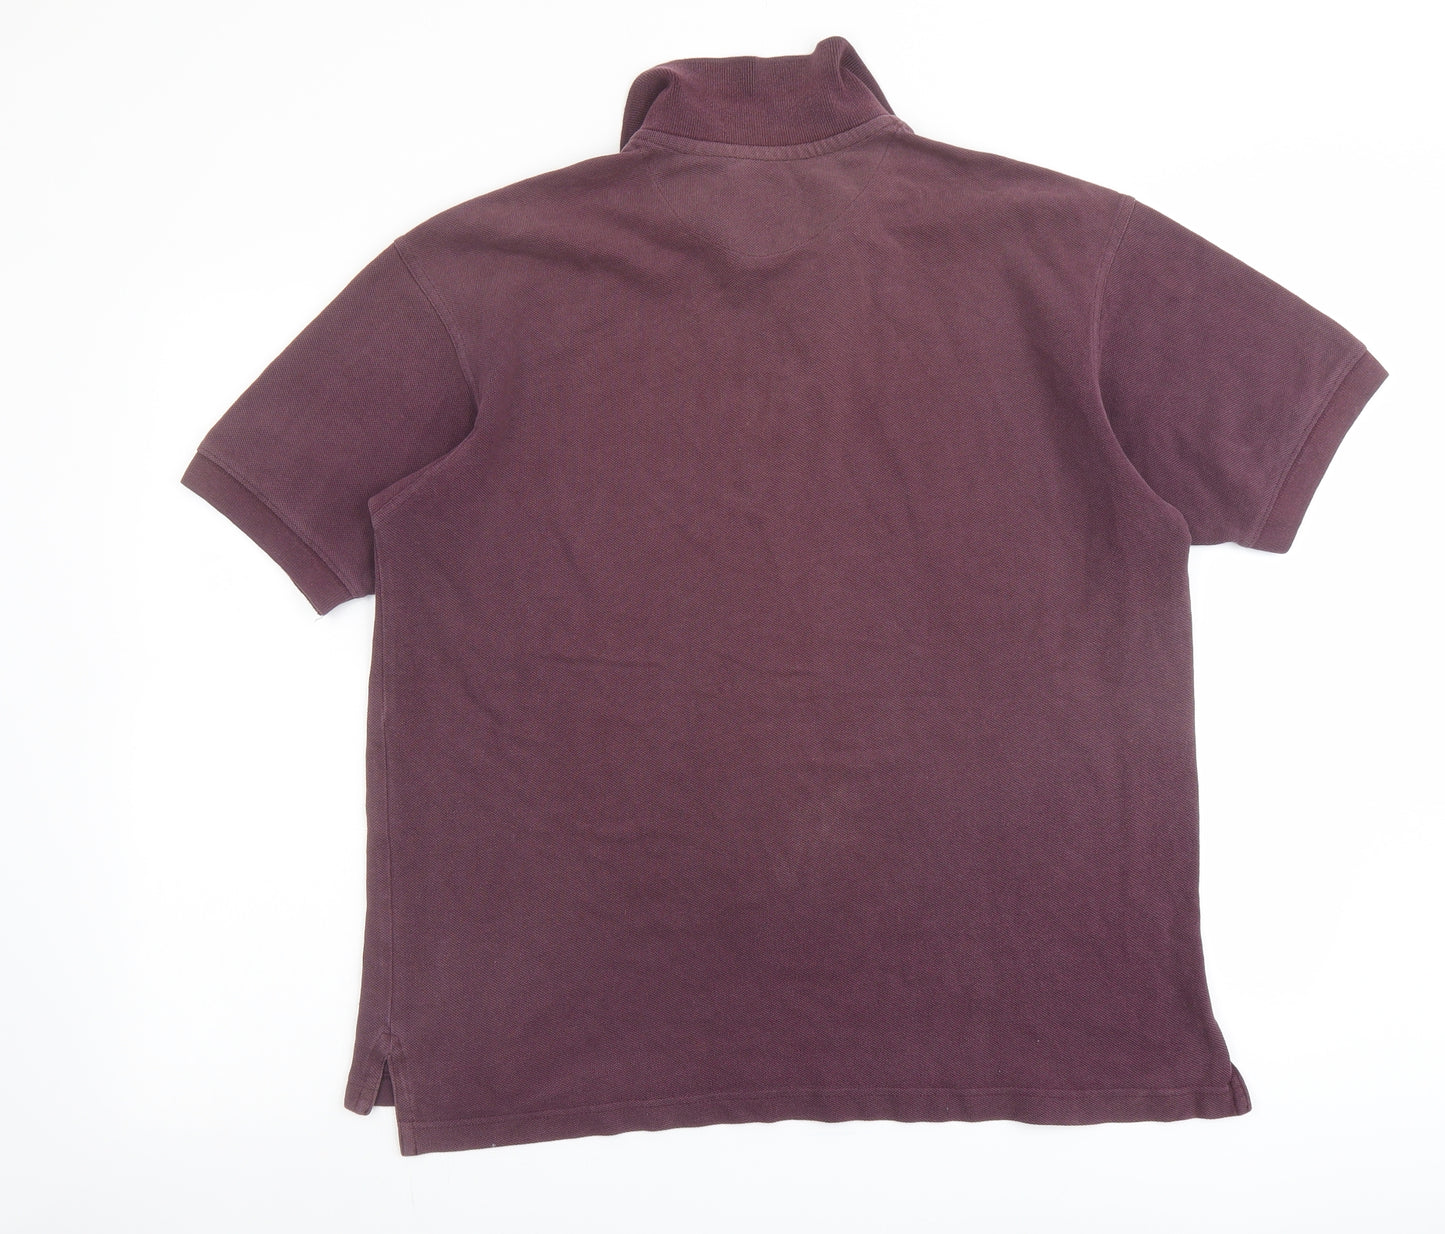 Gap Mens Purple Cotton Polo Size S Collared Button